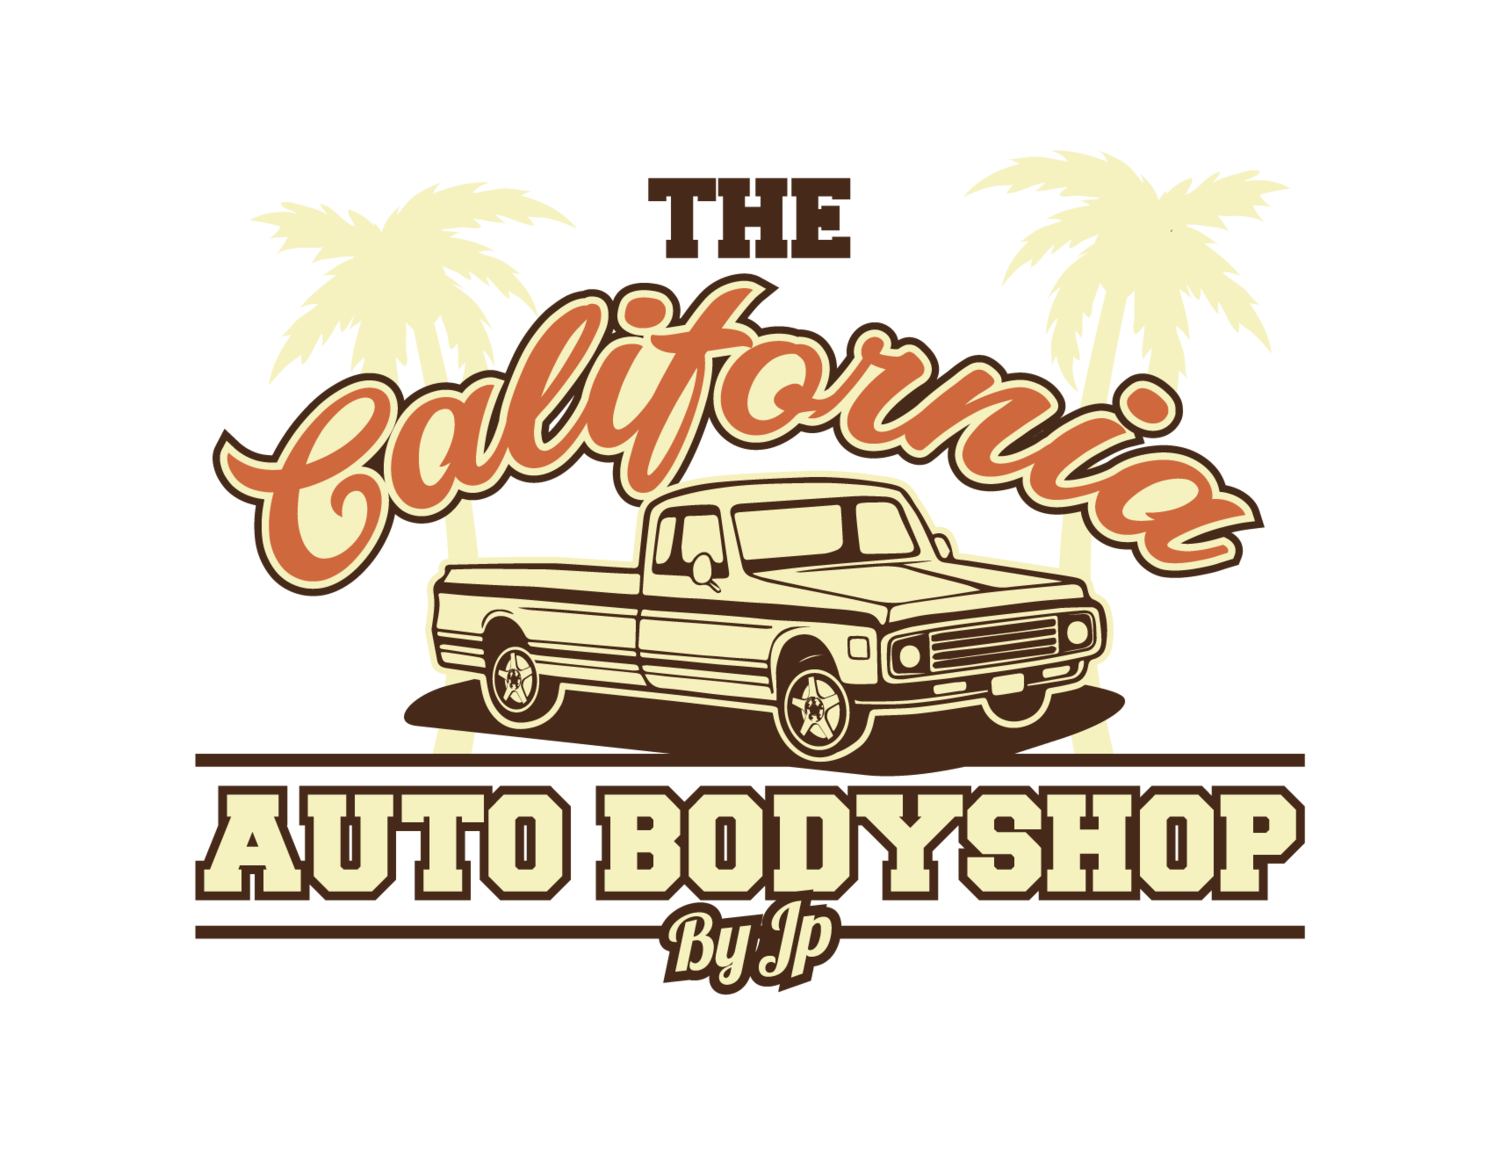 The California Auto Body Shop